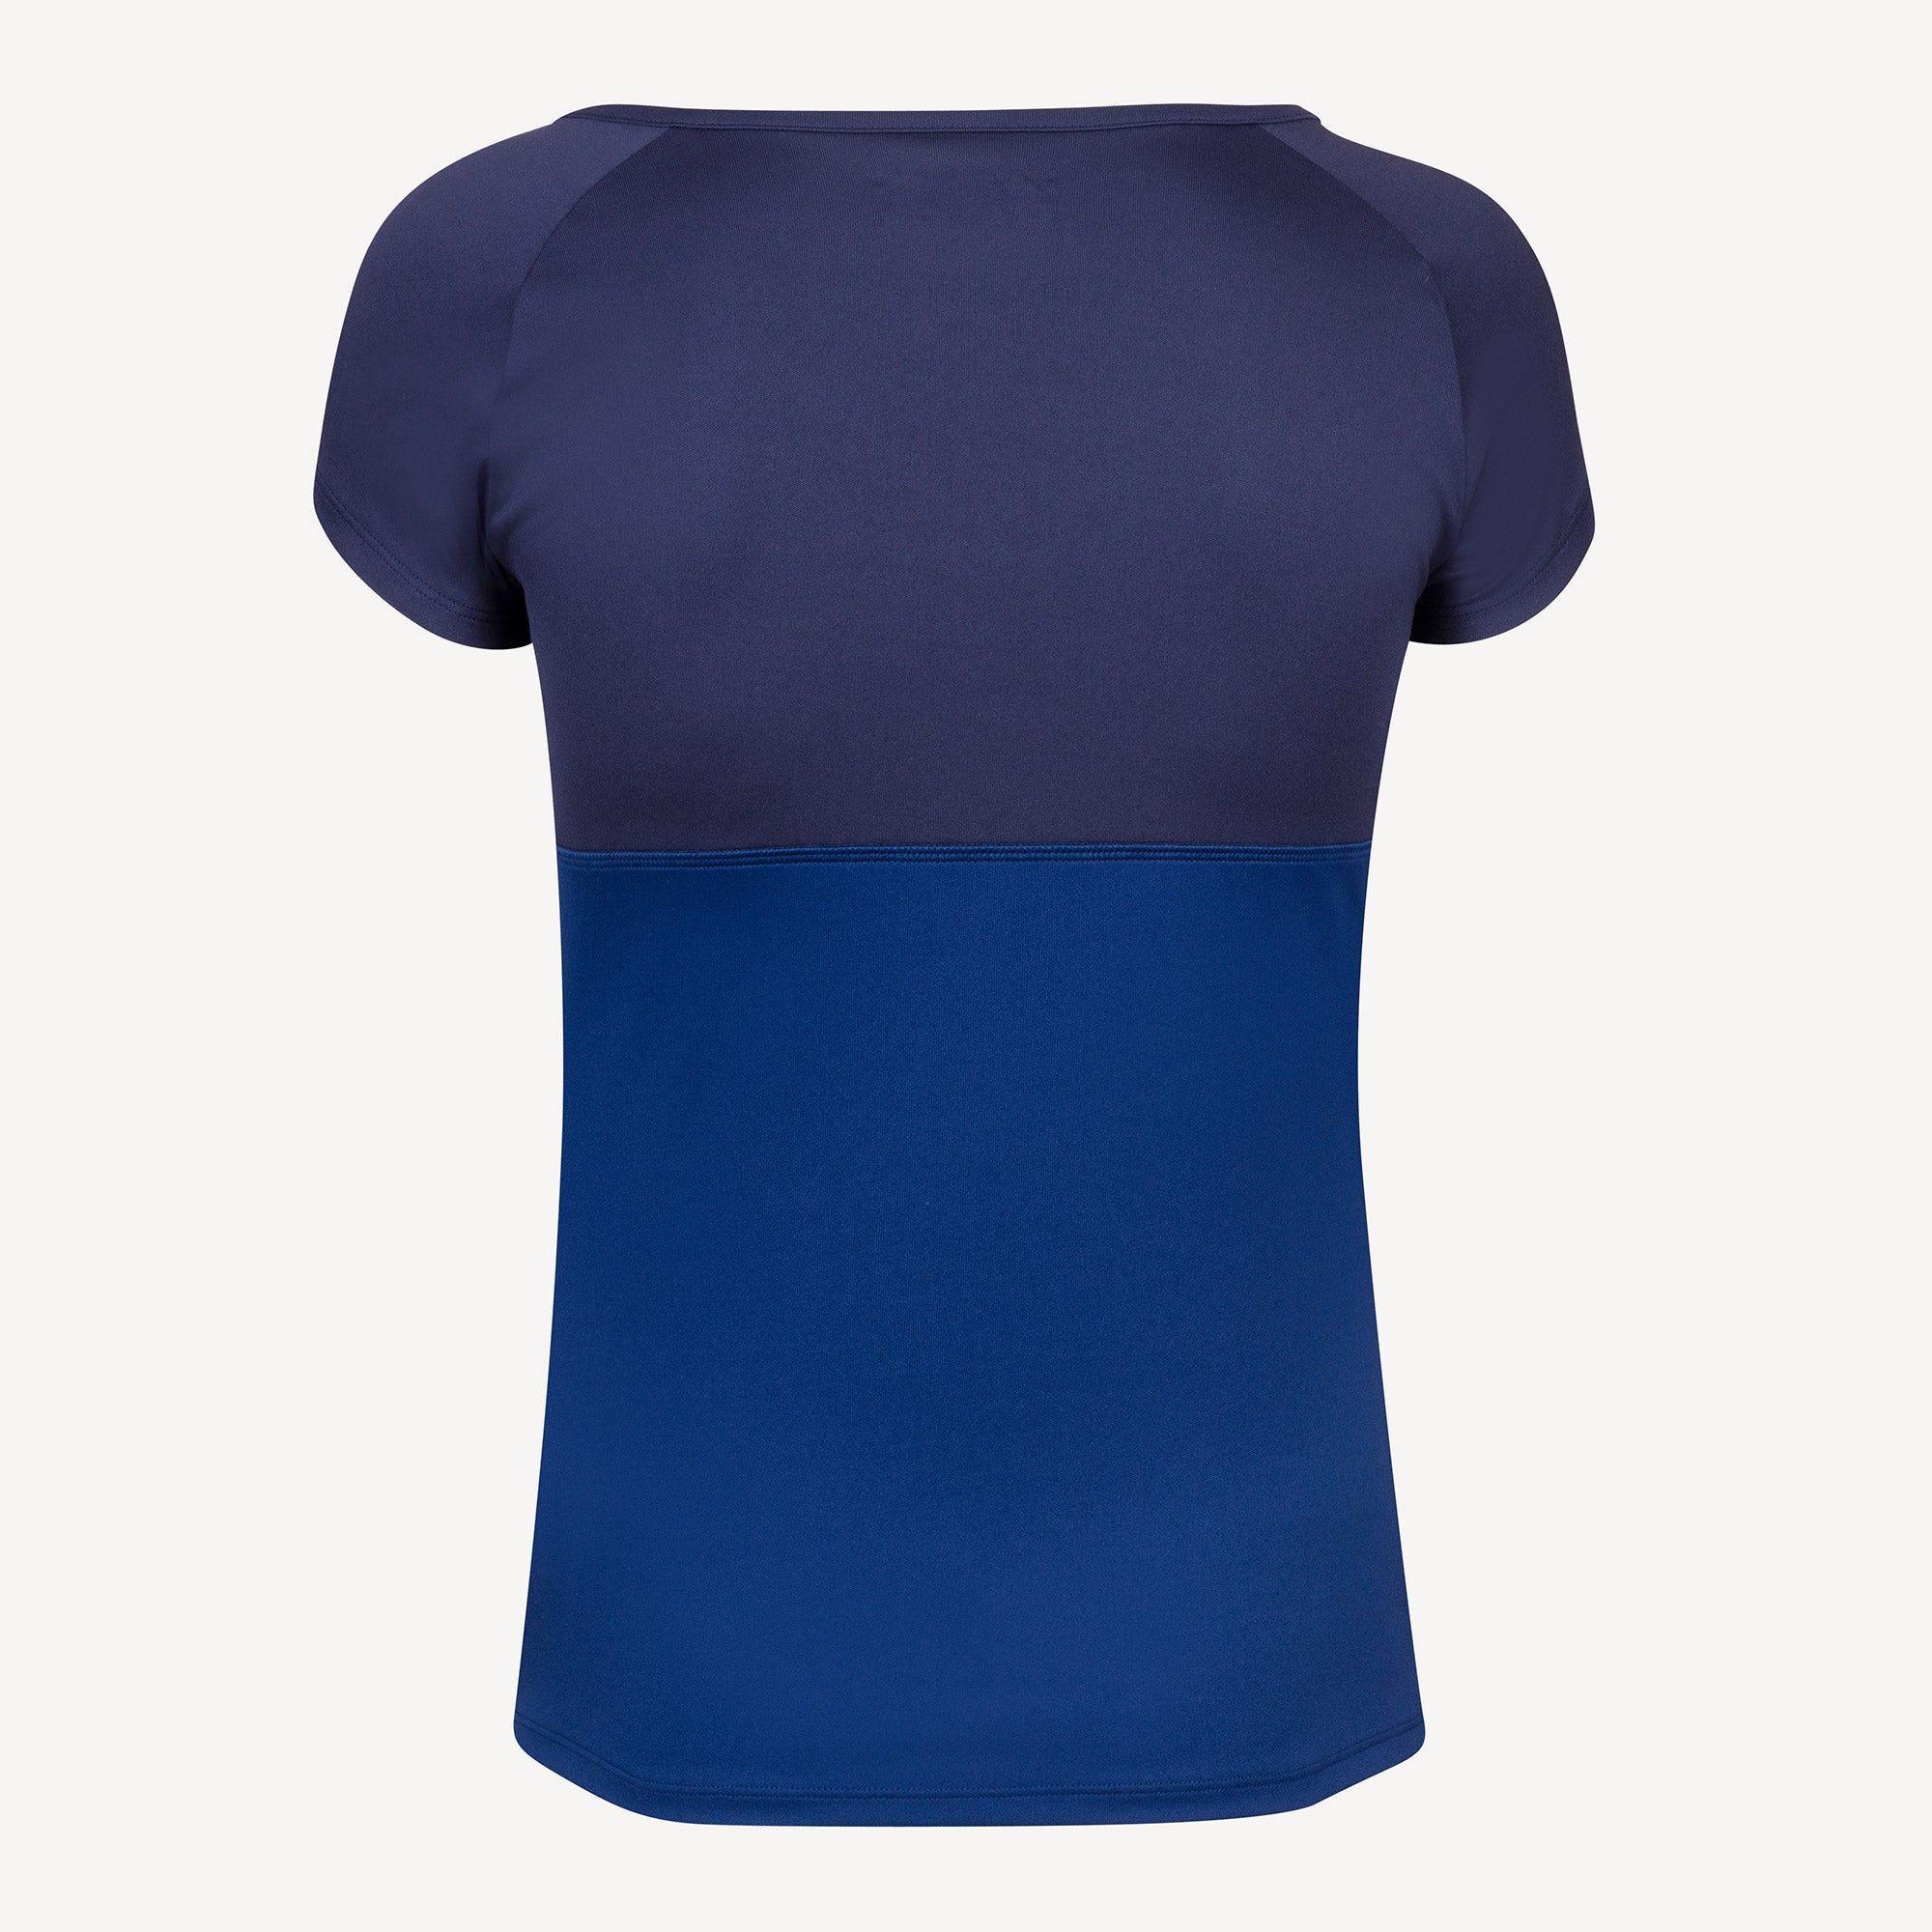 Babolat Play Club Girls' Tennis Shirt Blue (2)